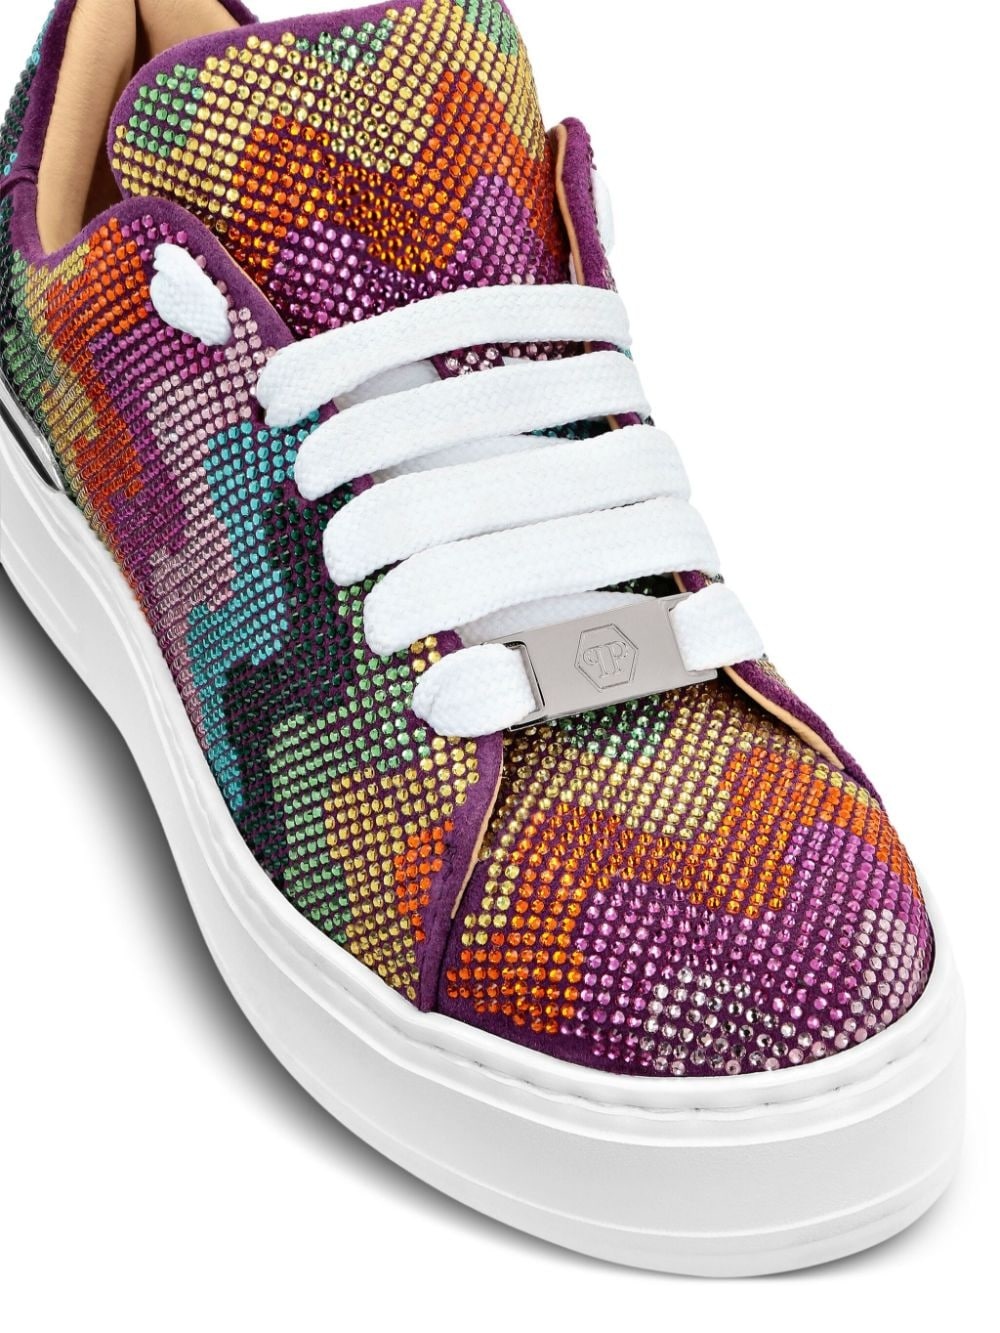 Crystal Waves Rainbow suede sneakers - 4